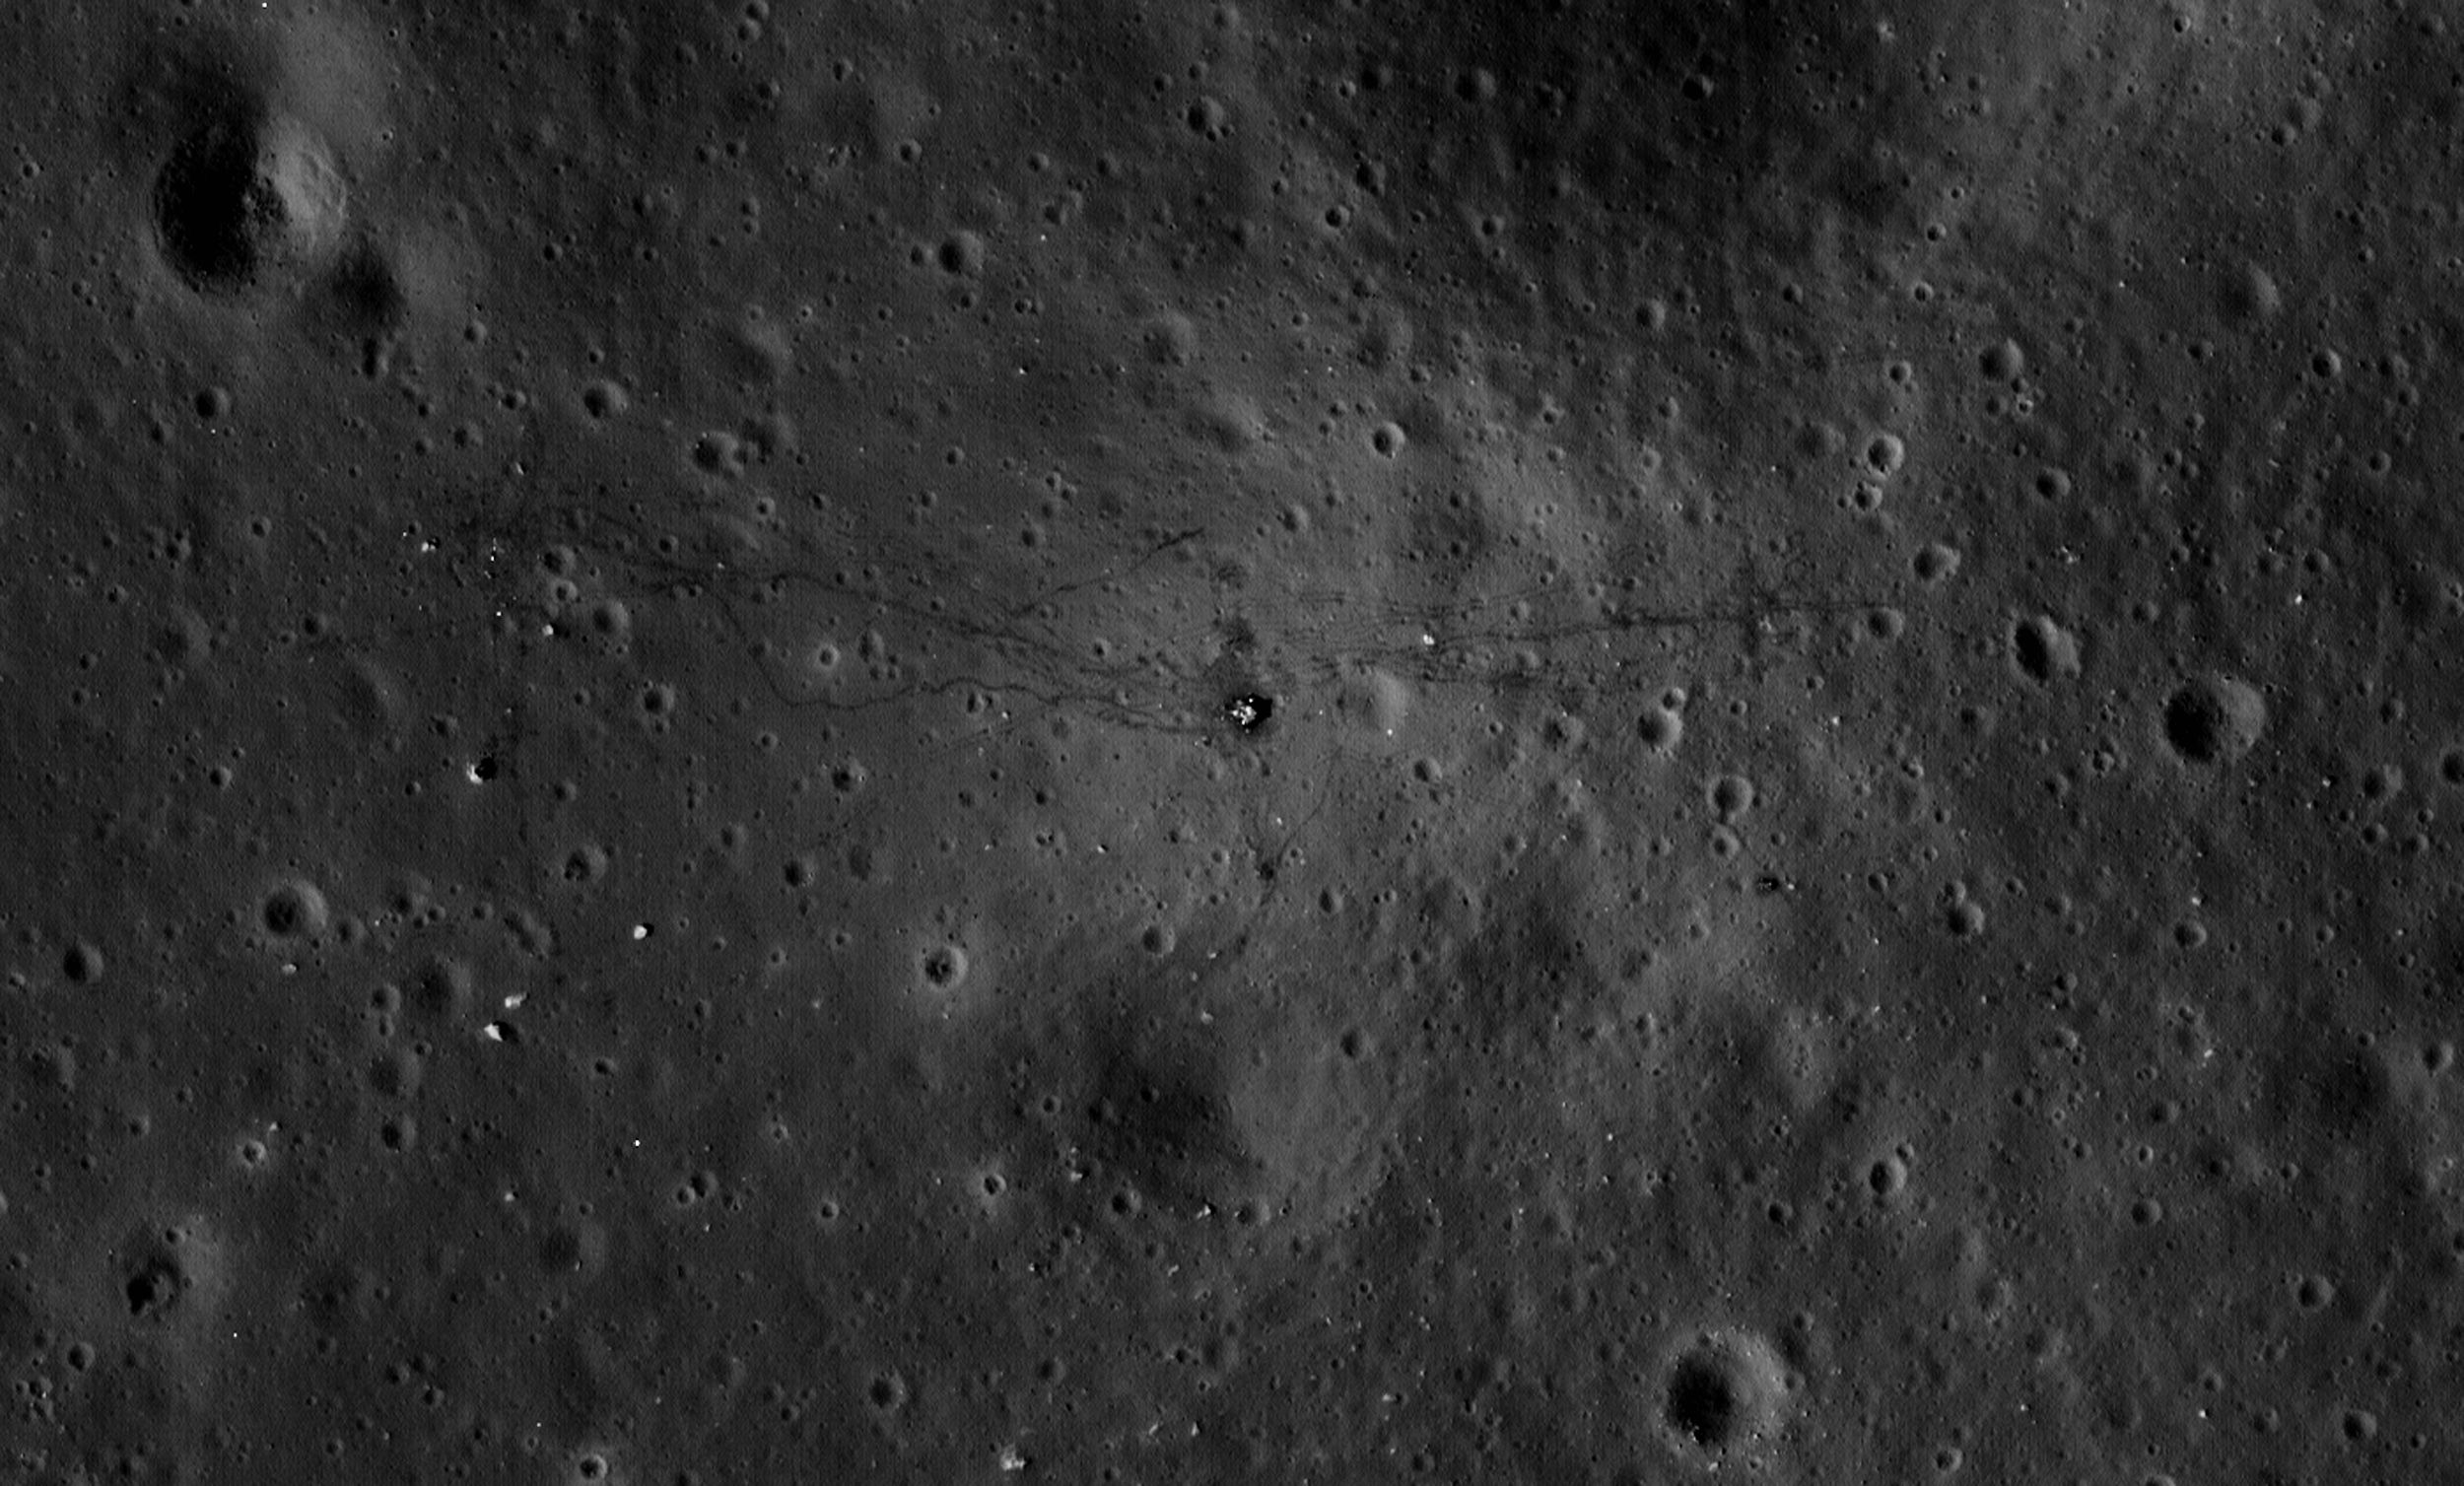 Apollo17.jpg